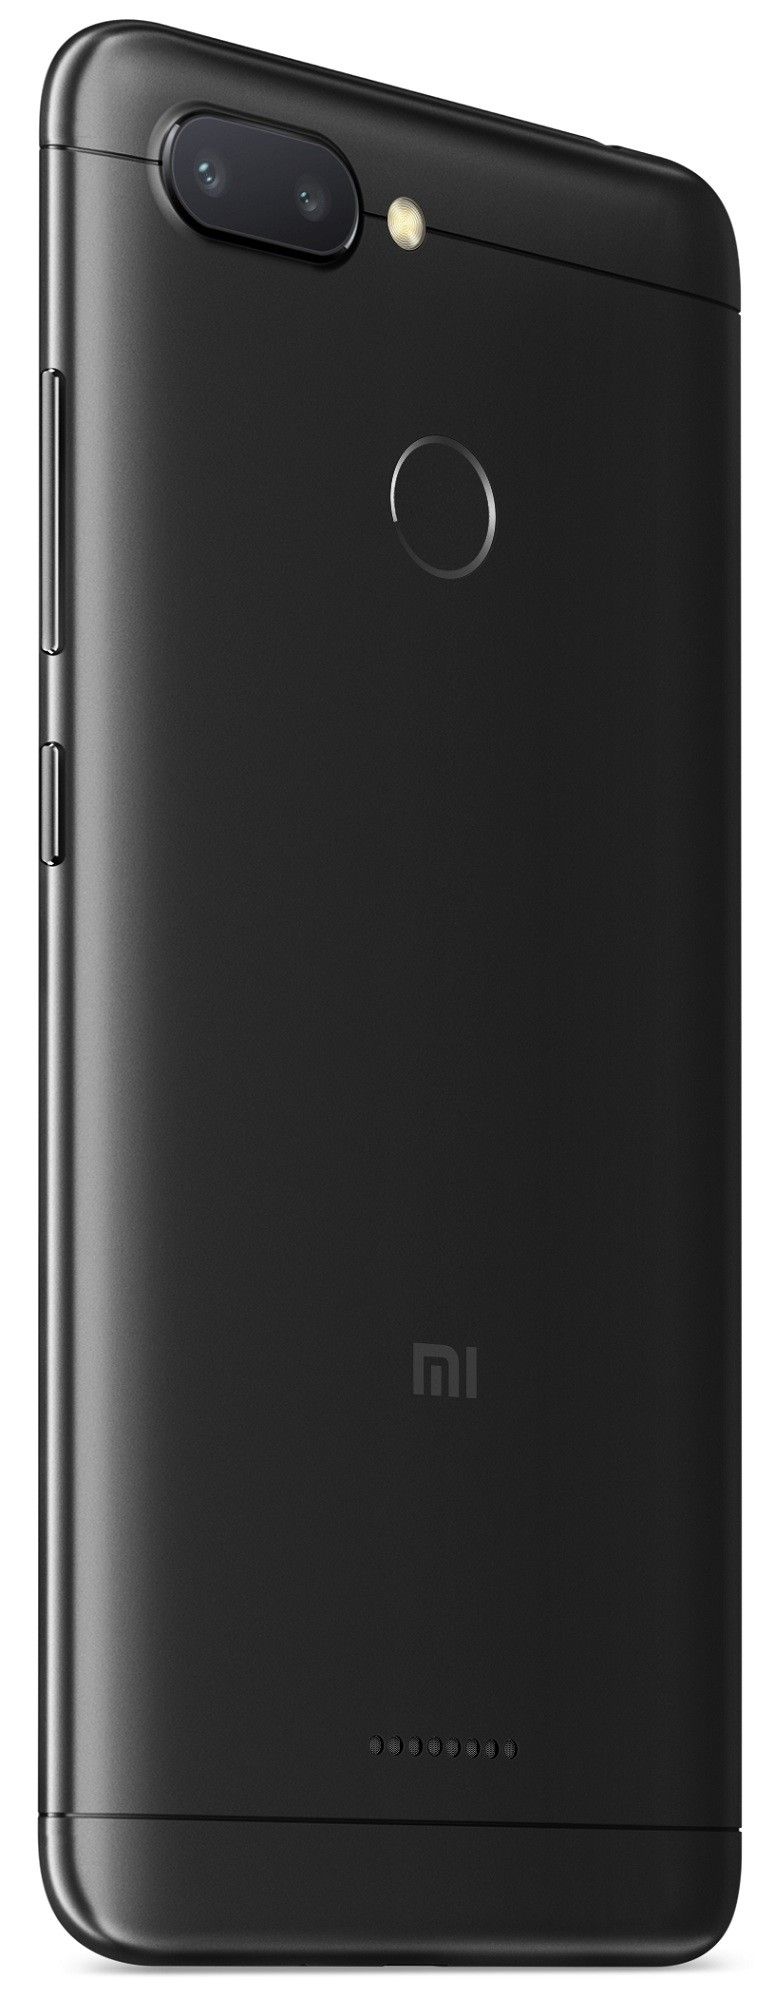 Цена Смартфон Xiaomi Redmi 6 3+64Gb Black